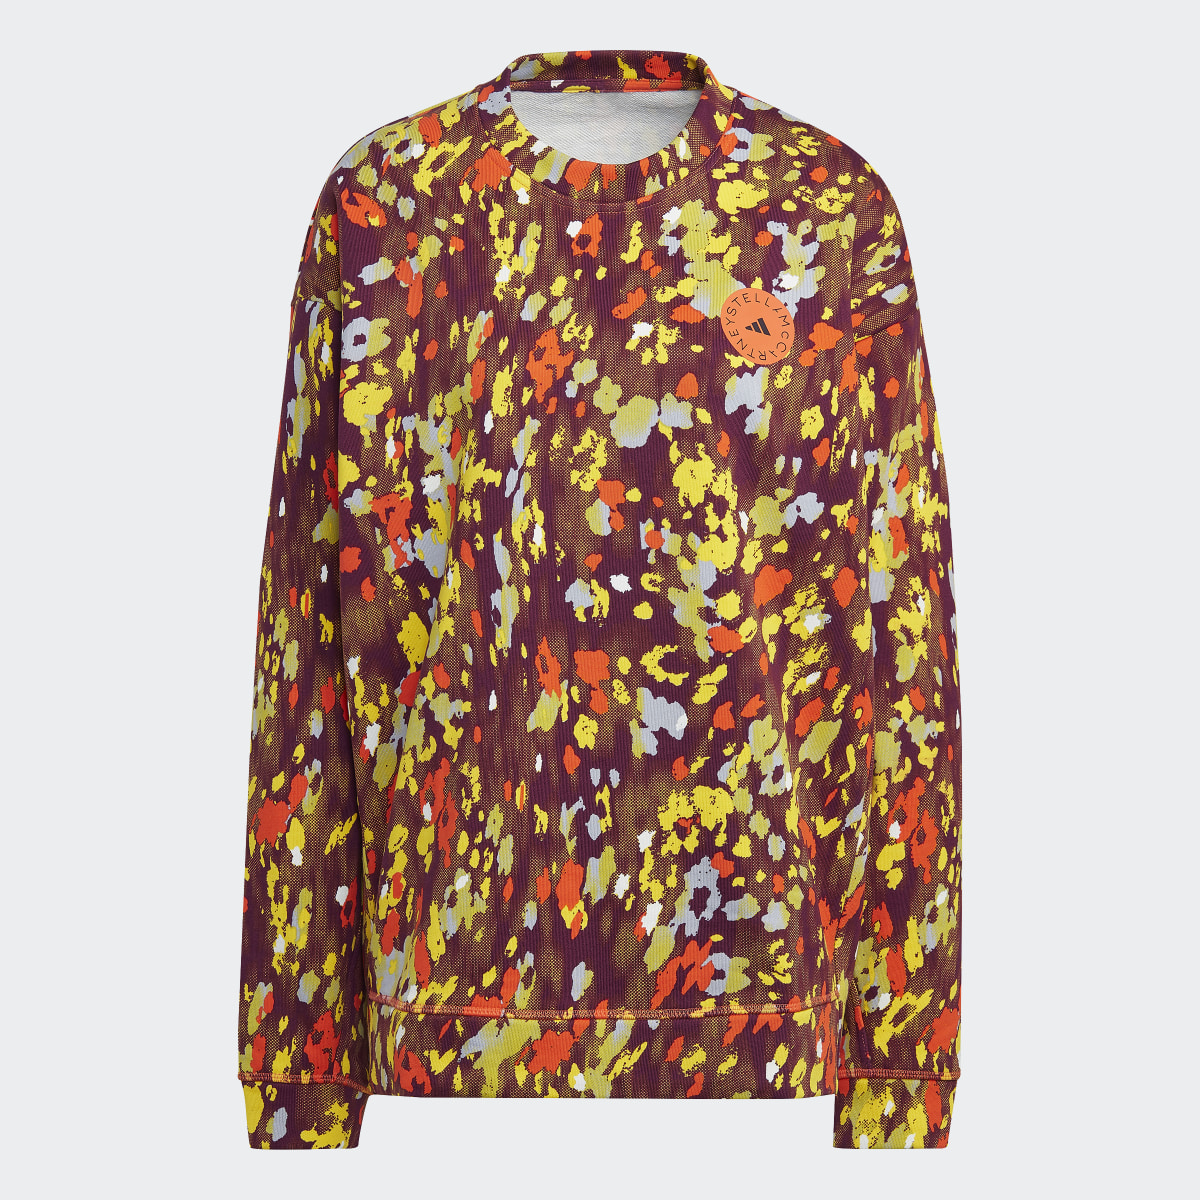 Adidas Sudadera adidas by Stella McCartney Floral Print. 4